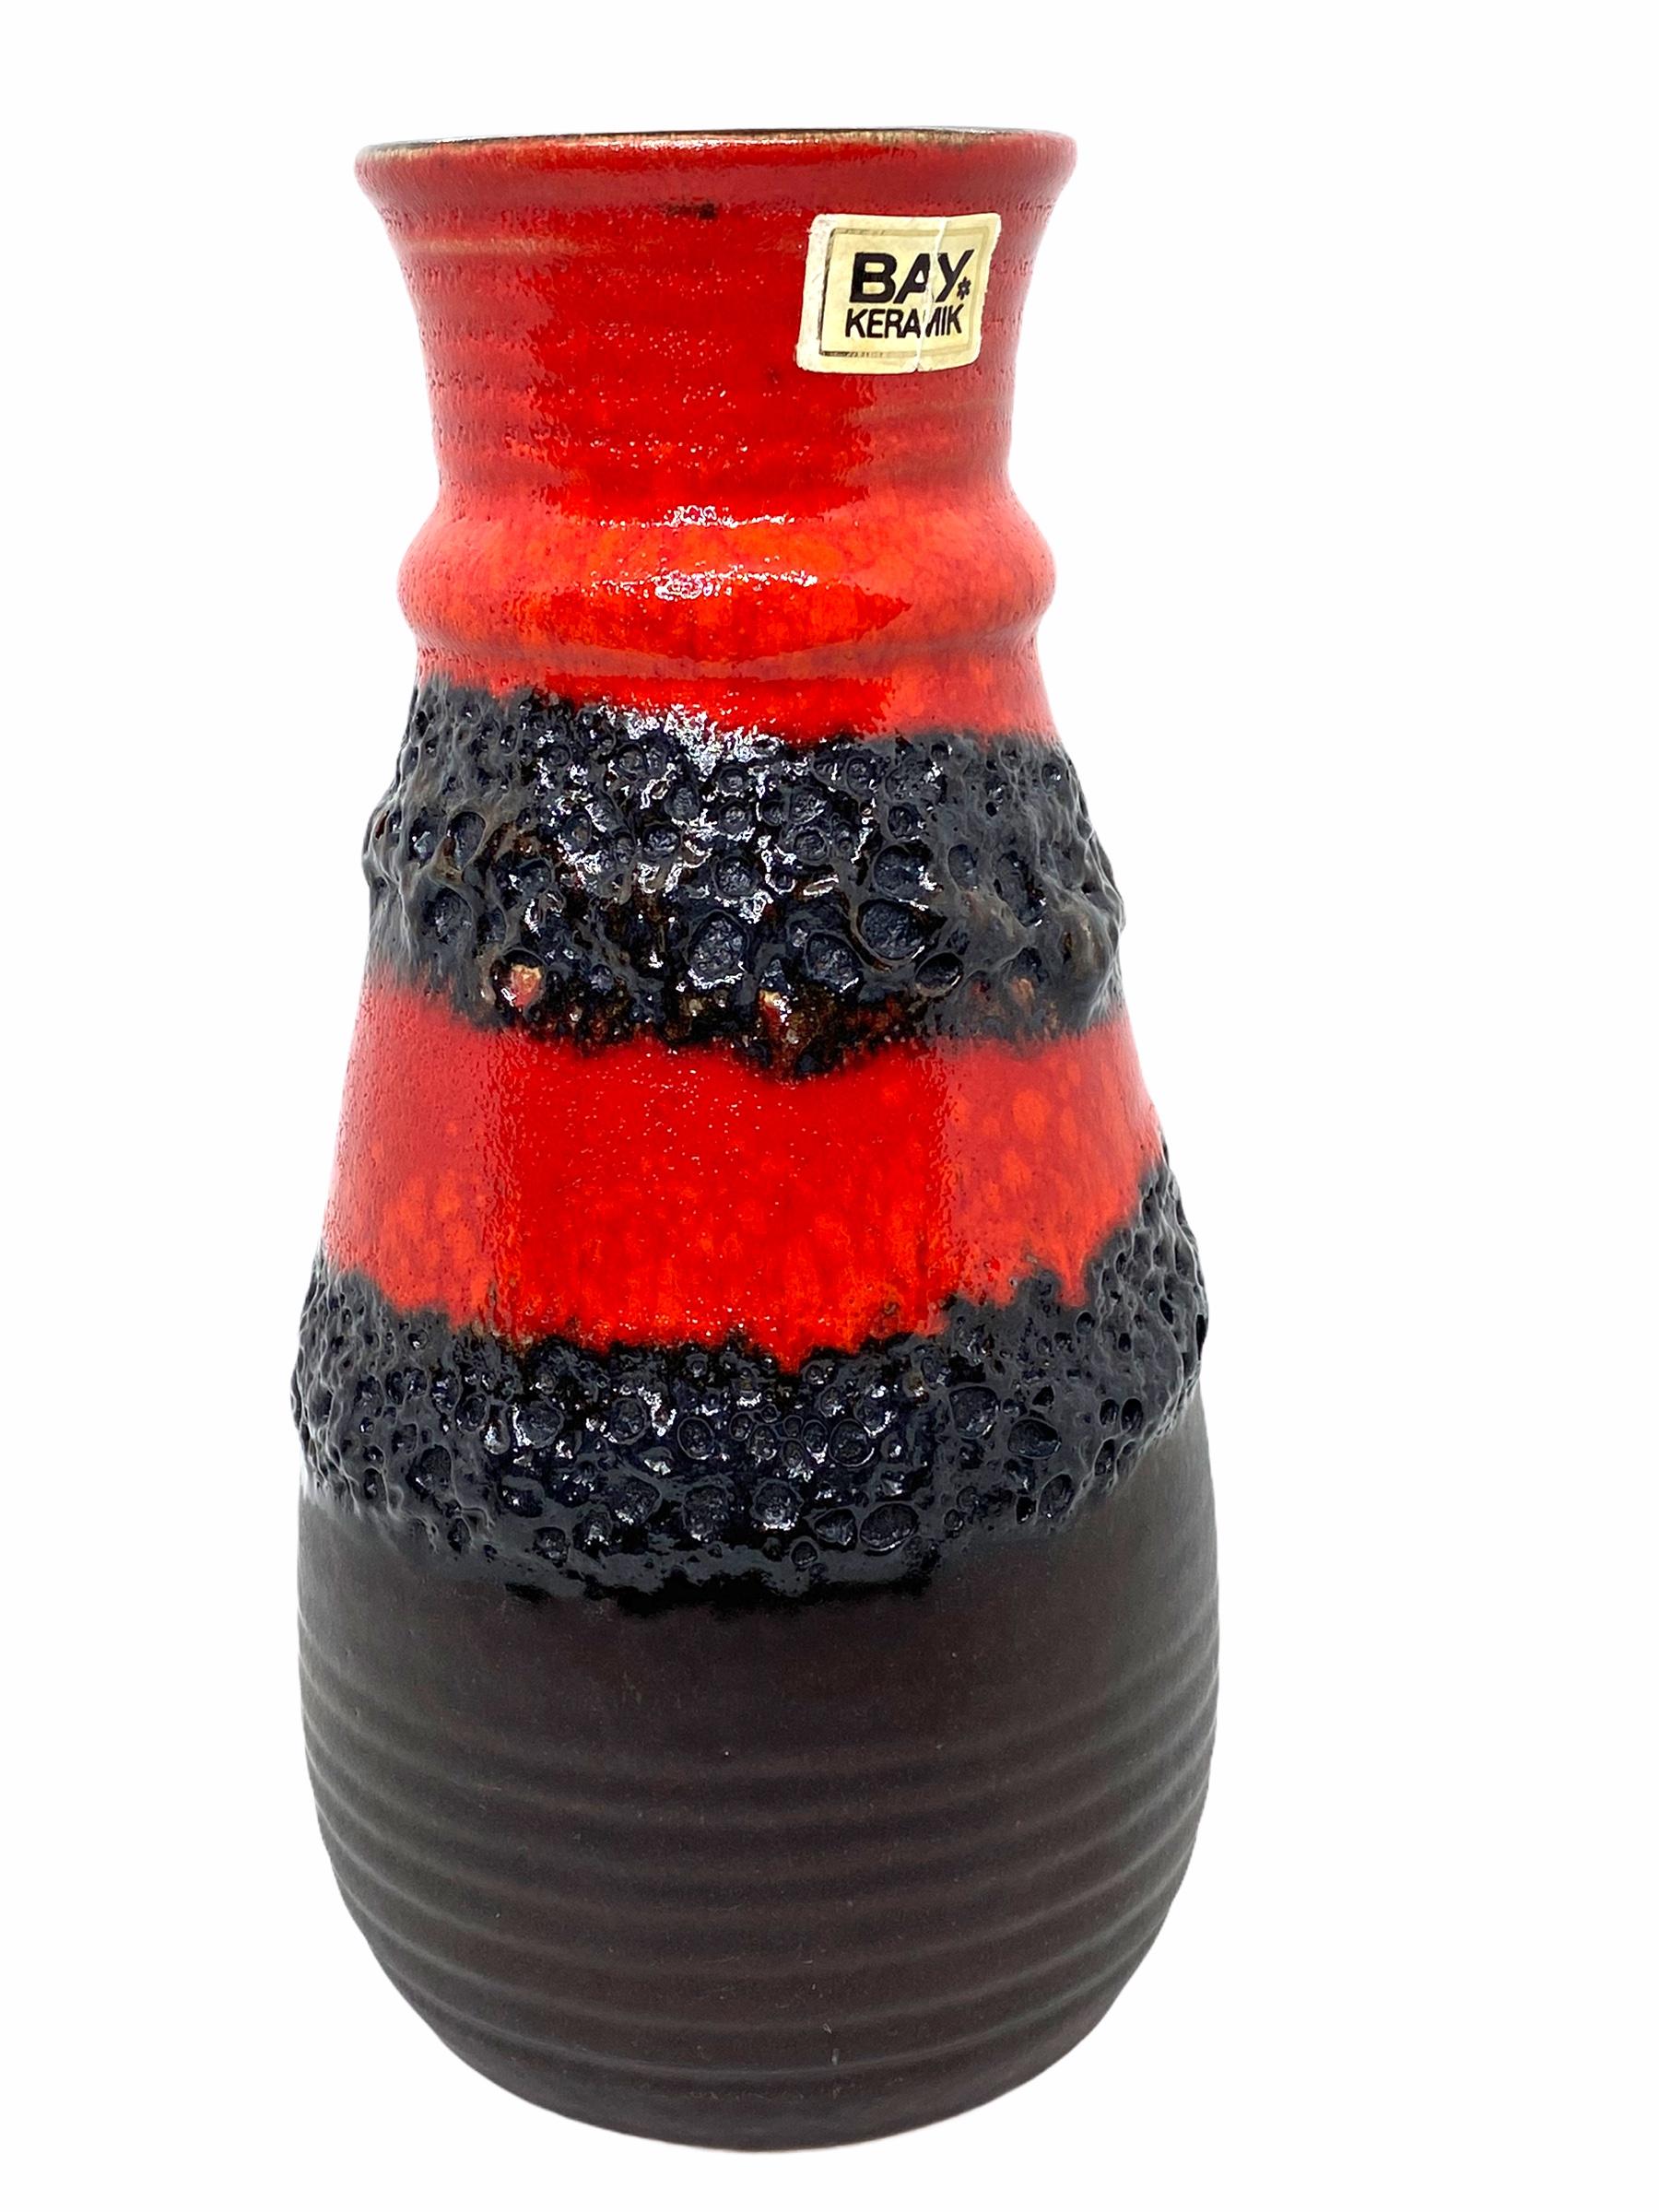 Eine erstaunliche Mitte des Jahrhunderts Studio Kunst Keramik Vase in Deutschland gemacht, circa 1970er Jahren. Die Vase ist in sehr gutem Zustand, ohne Chips, Risse oder Flohbisse. Signiert mit Herstellerzeichen und Label.